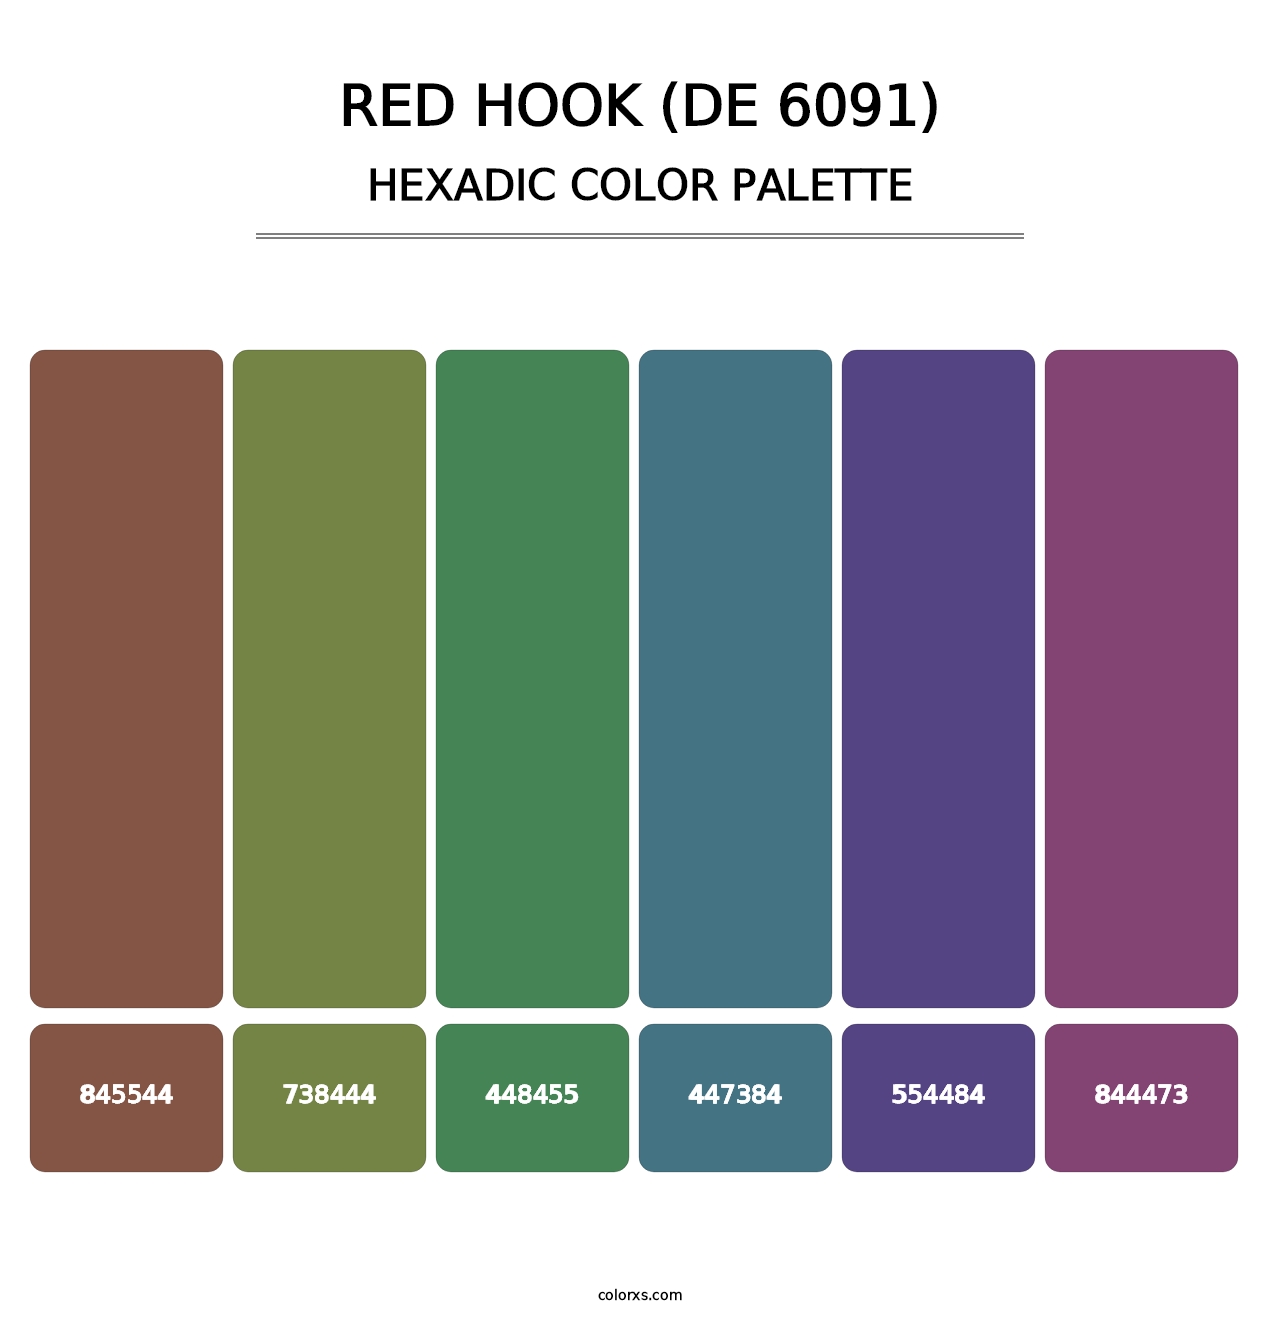 Red Hook (DE 6091) - Hexadic Color Palette